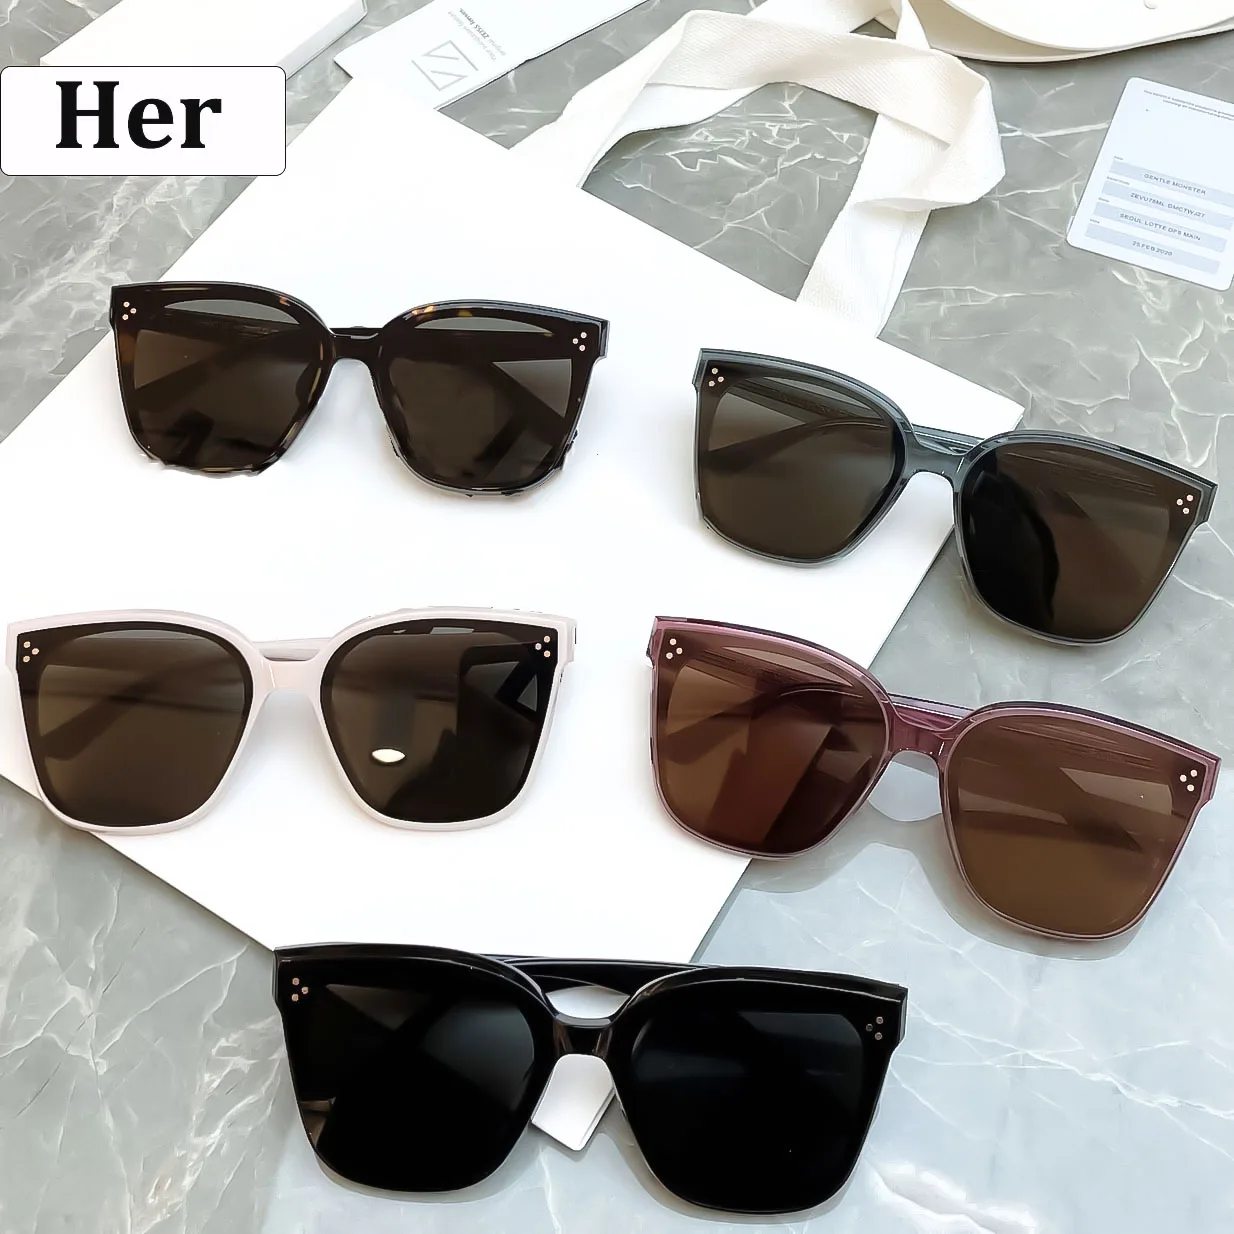 

GM HER Vintage Lenses Eyewear popular Sunglasses Men Women Luxury Brand Designer Sun Glasses High Quality Driving Outdoor UV400